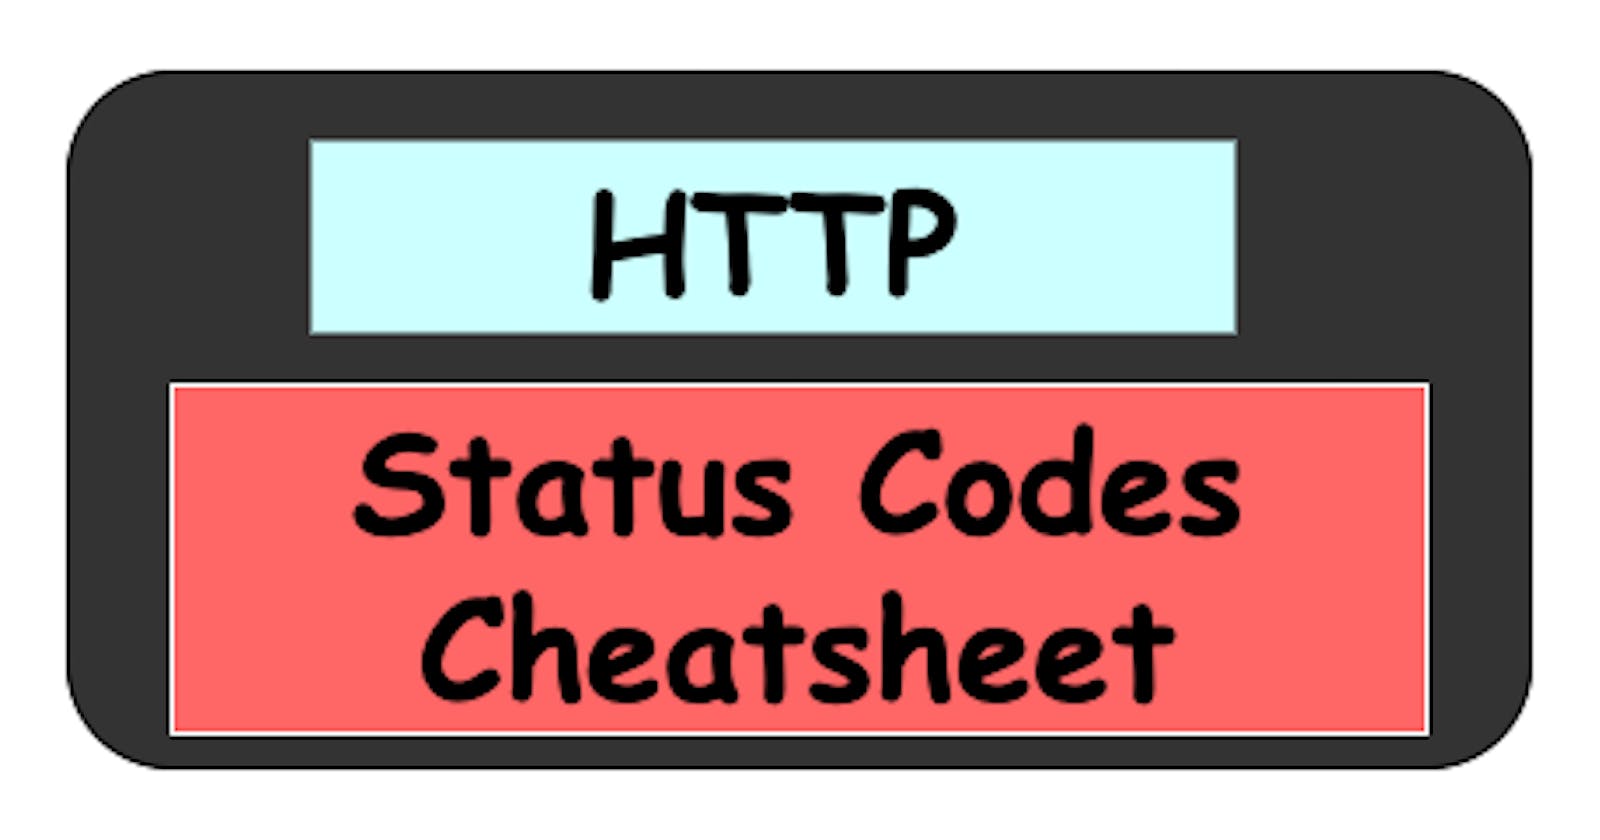 HTTP Status Codes Cheatsheet